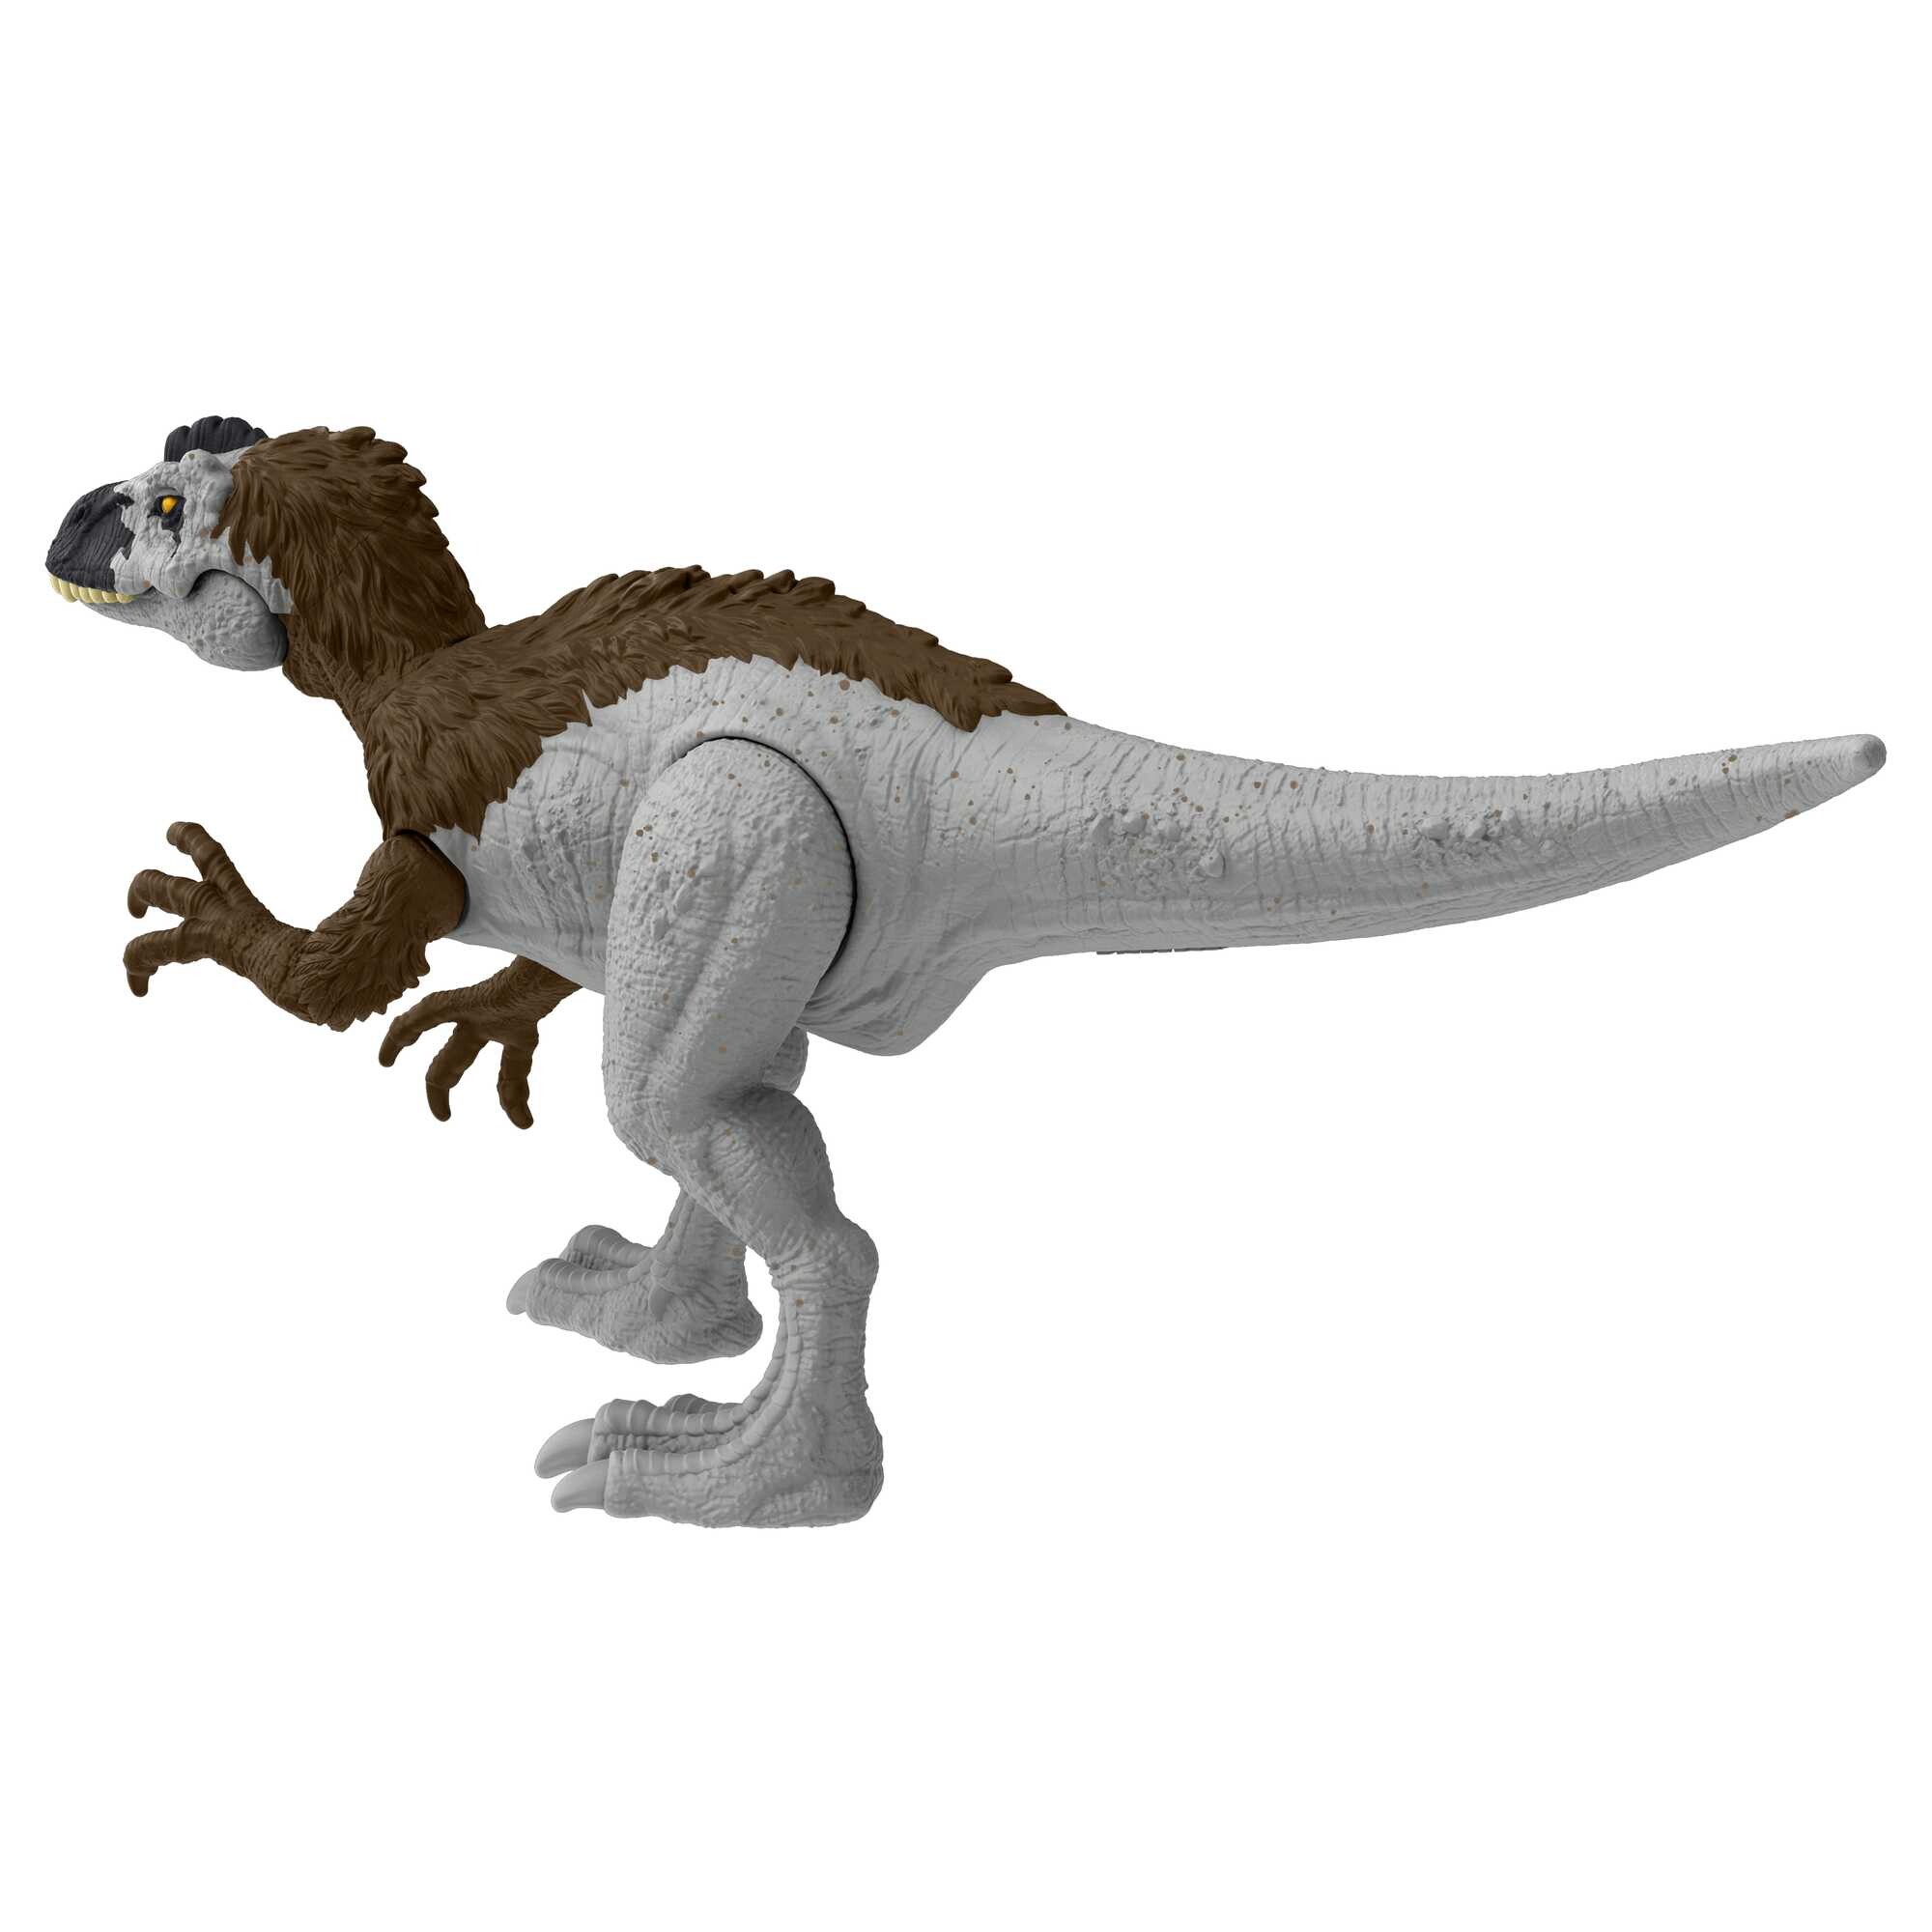 Jurassic world pericolo giurassico - xuanhanosauro , dinosauro snodato con design autentico, specie di medie dimensioni lungo 18 cm e alto 7+ cm - Jurassic World